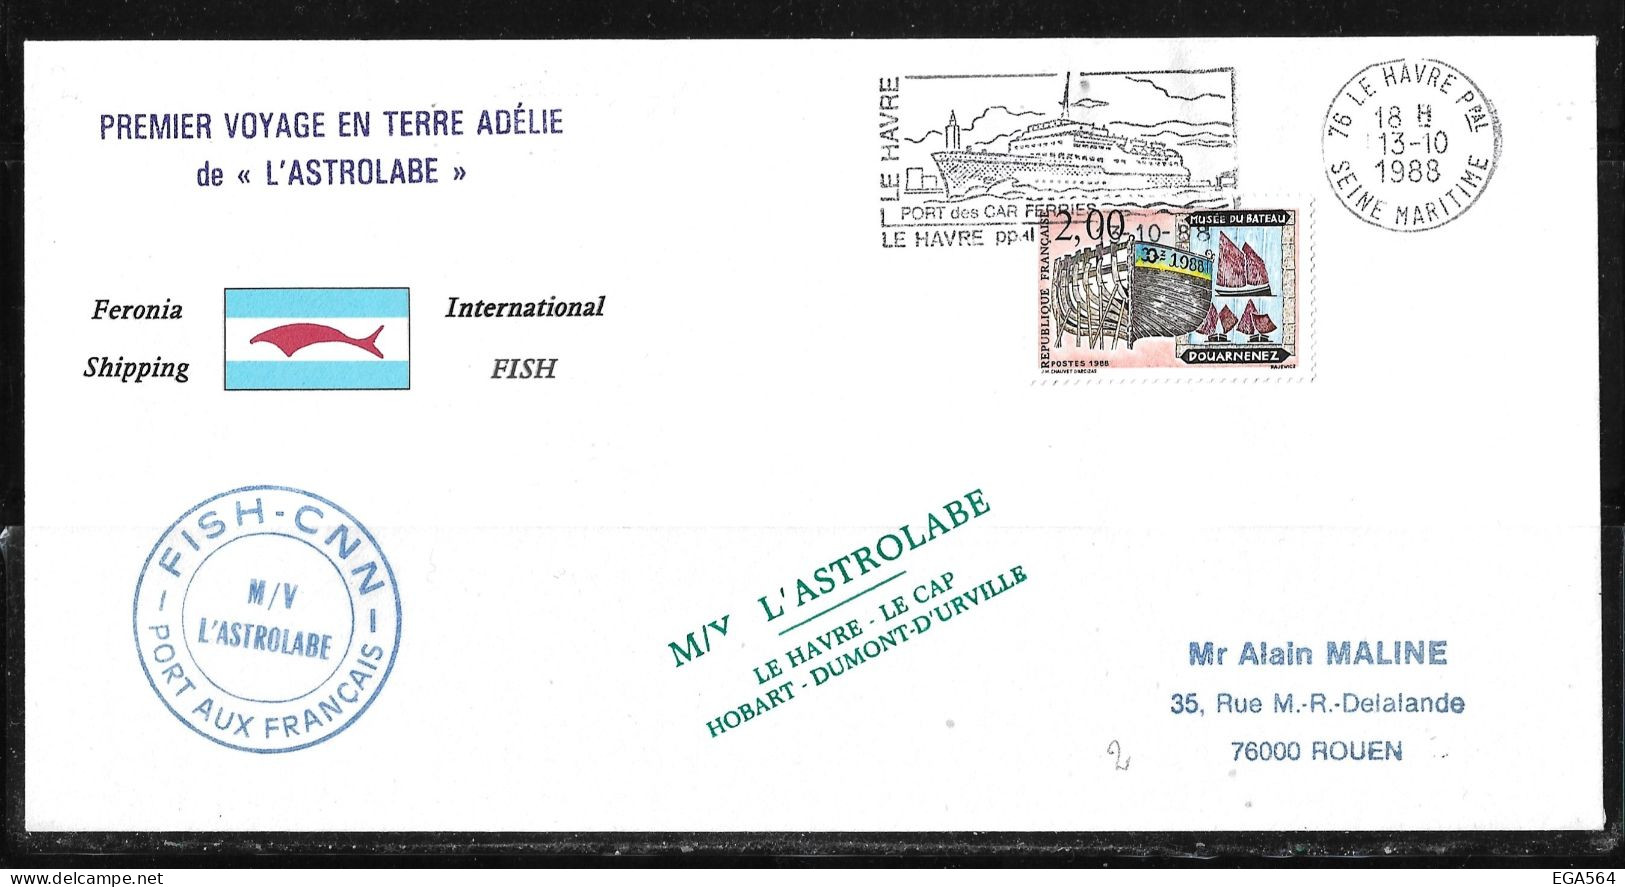 91 - TAAF Timbre France 13.10.1988 Le Havre. Départ De La 1ère Rotation De " L'ASTROLABE" - Lettres & Documents